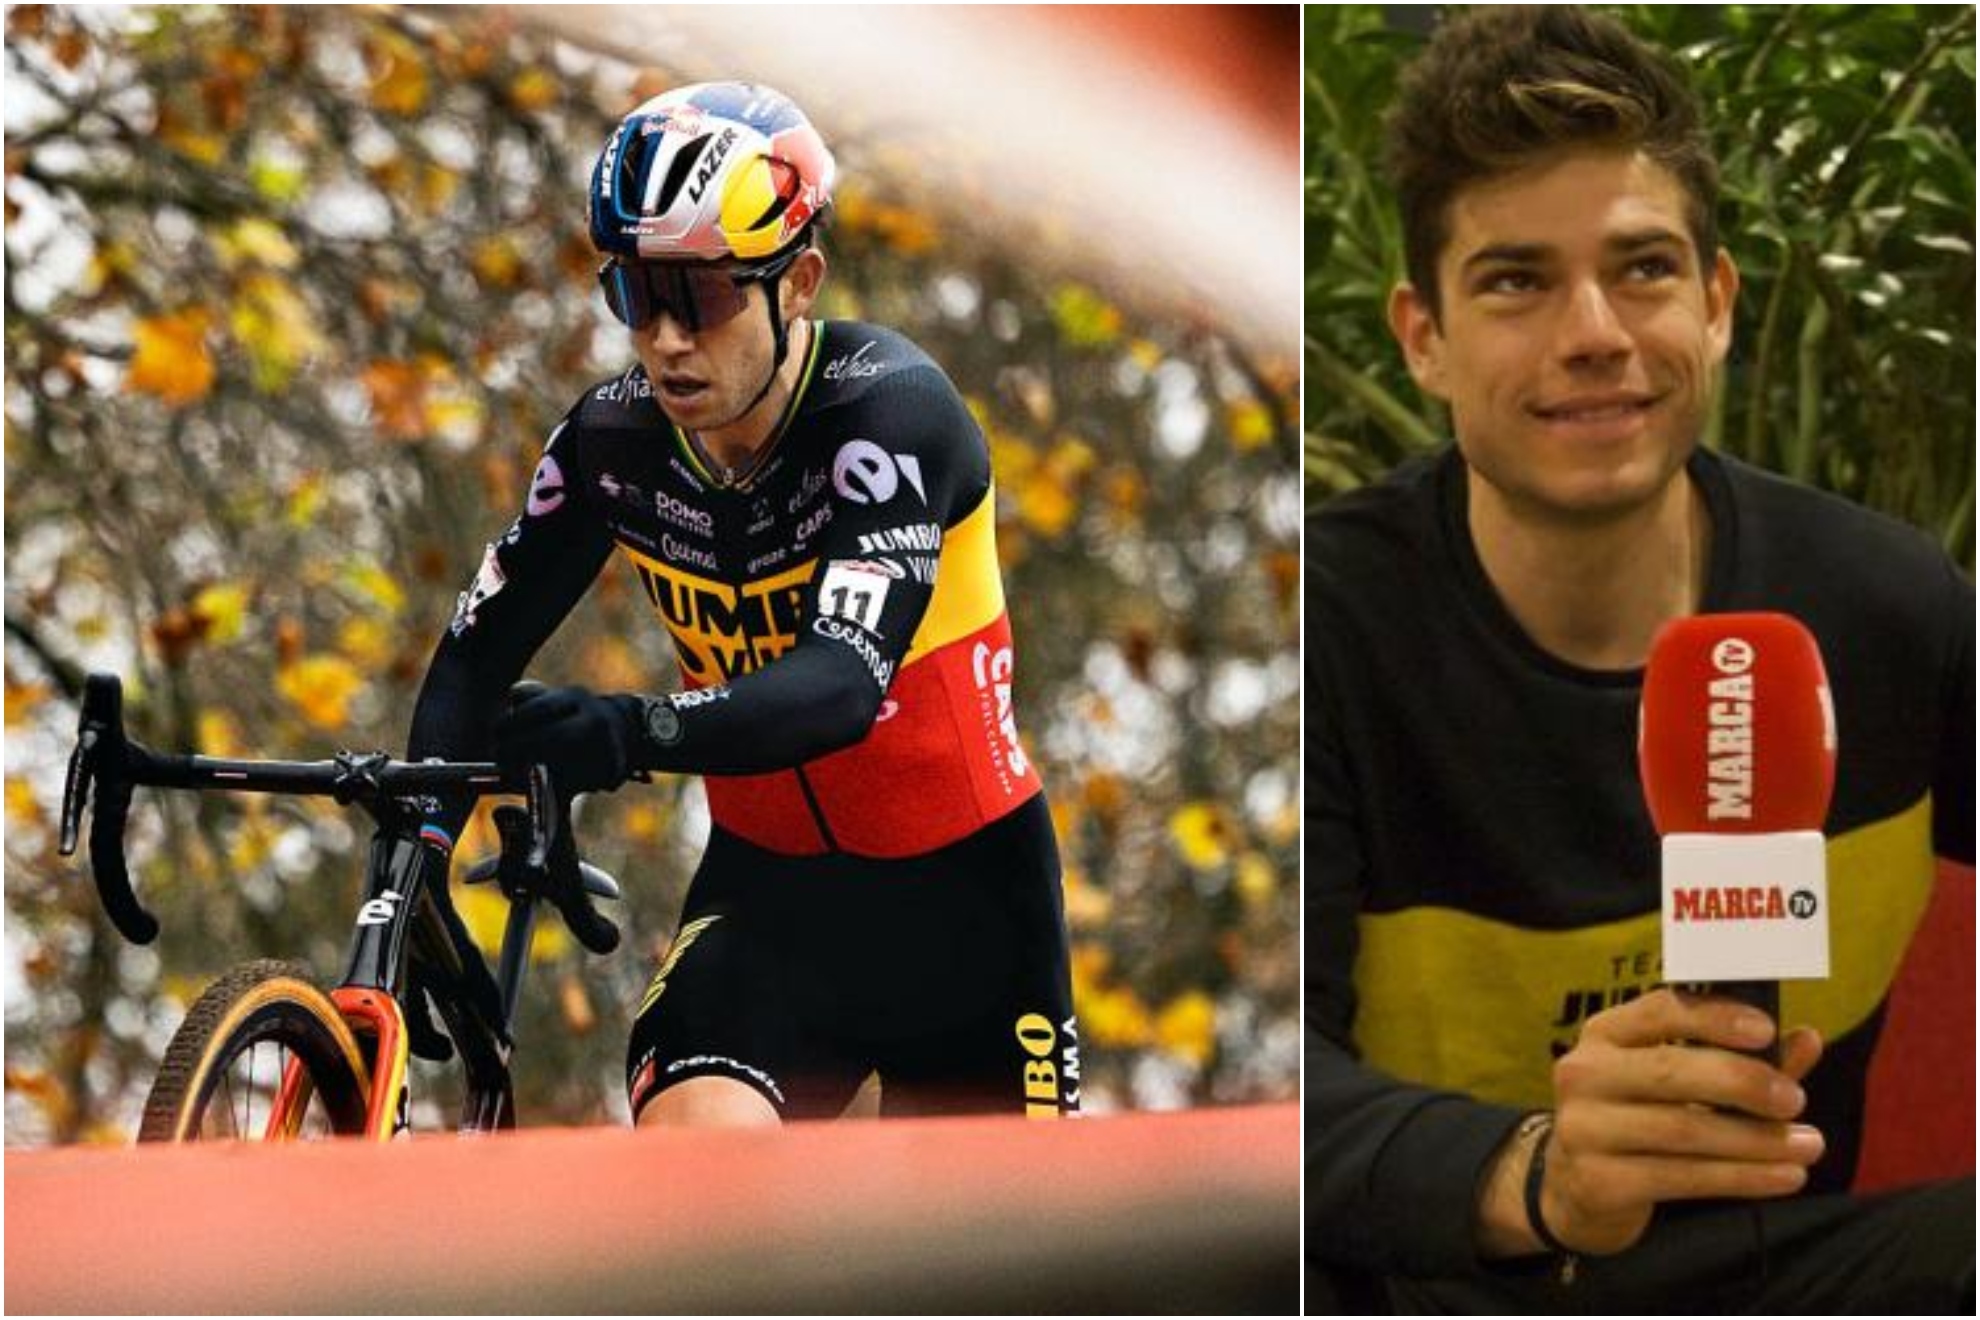 El ciclista total debuta por fin en Espaa